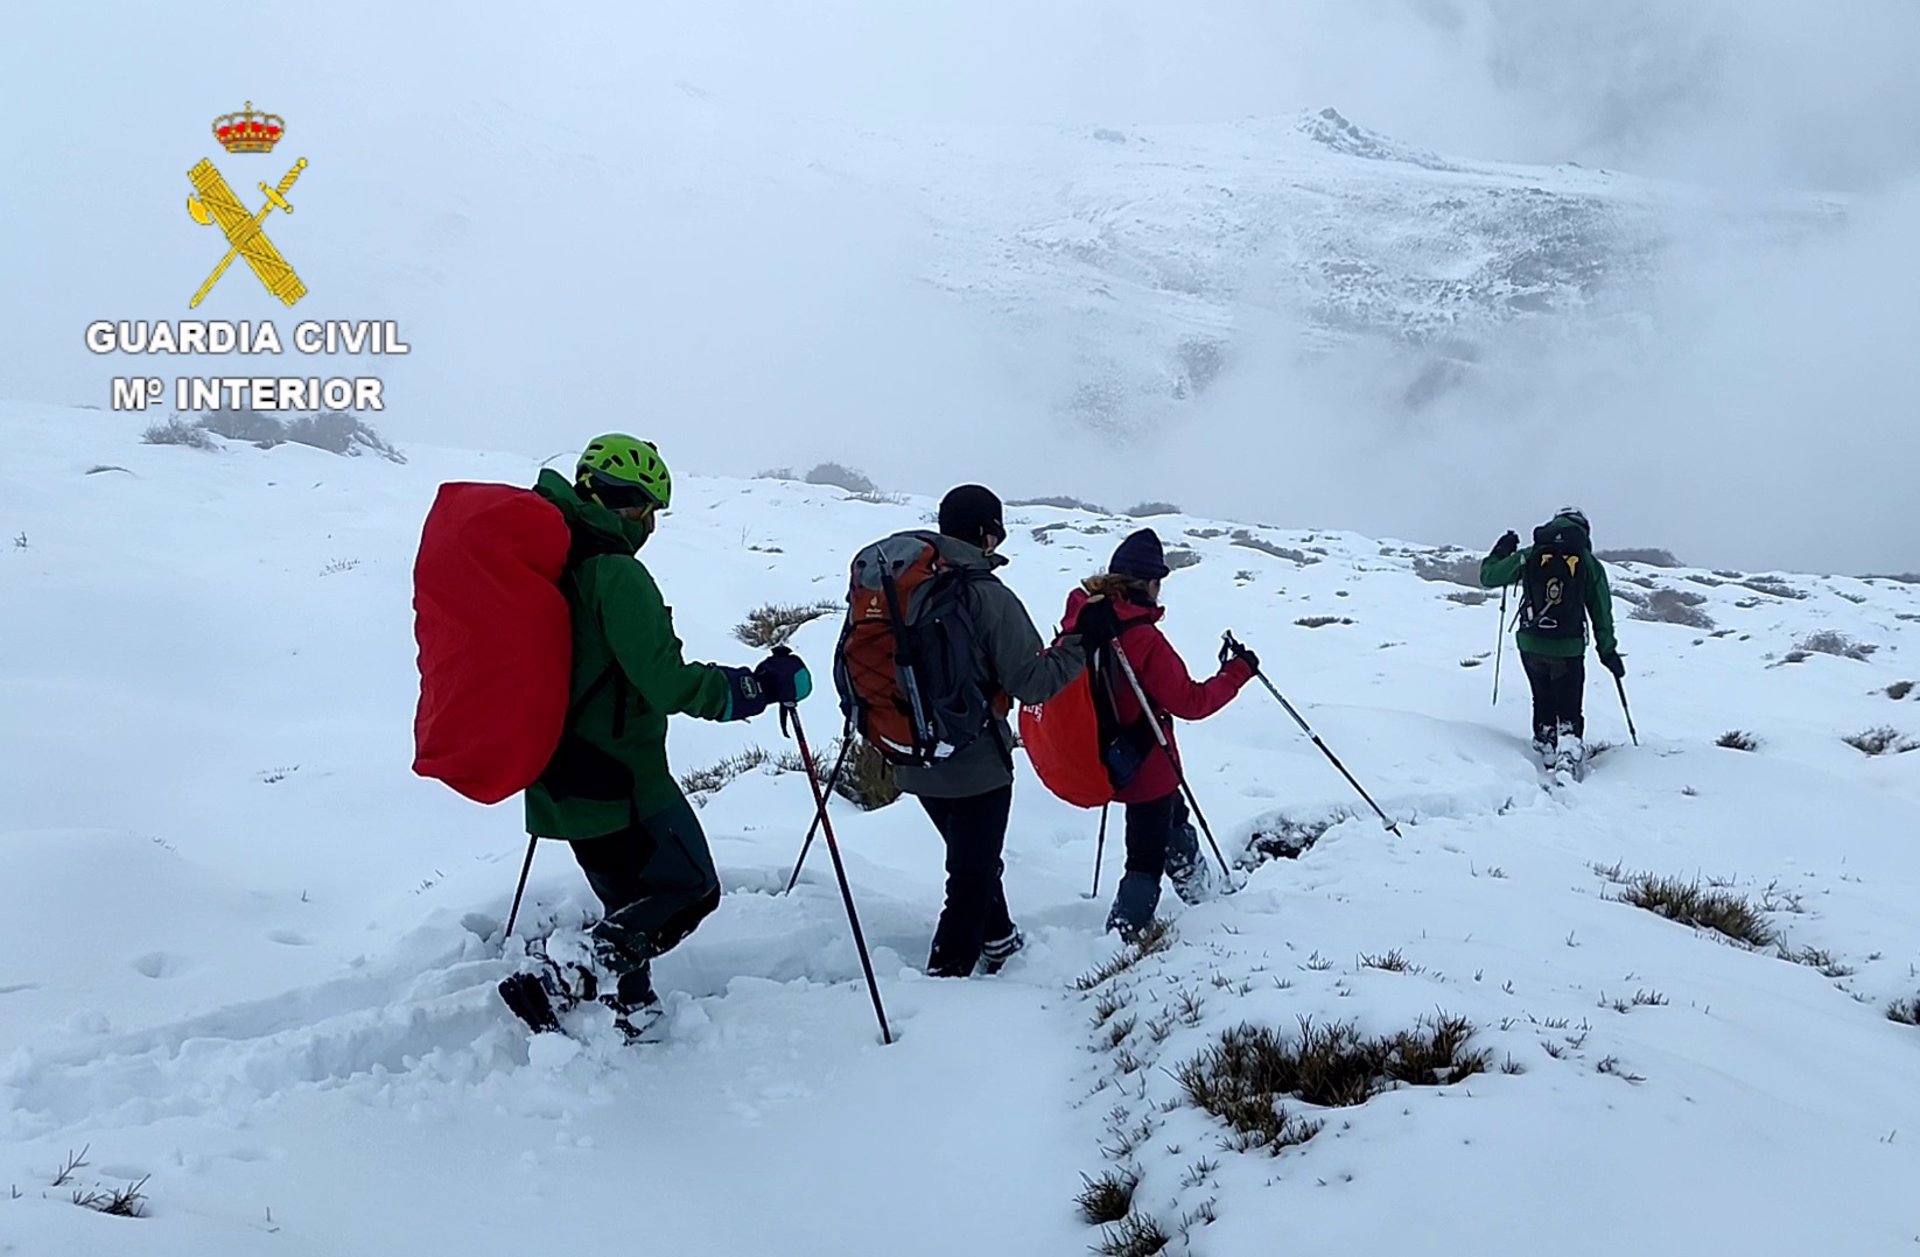 Rescatados dos montañeros que llevaban tres días perdidos en Sierra Nevada